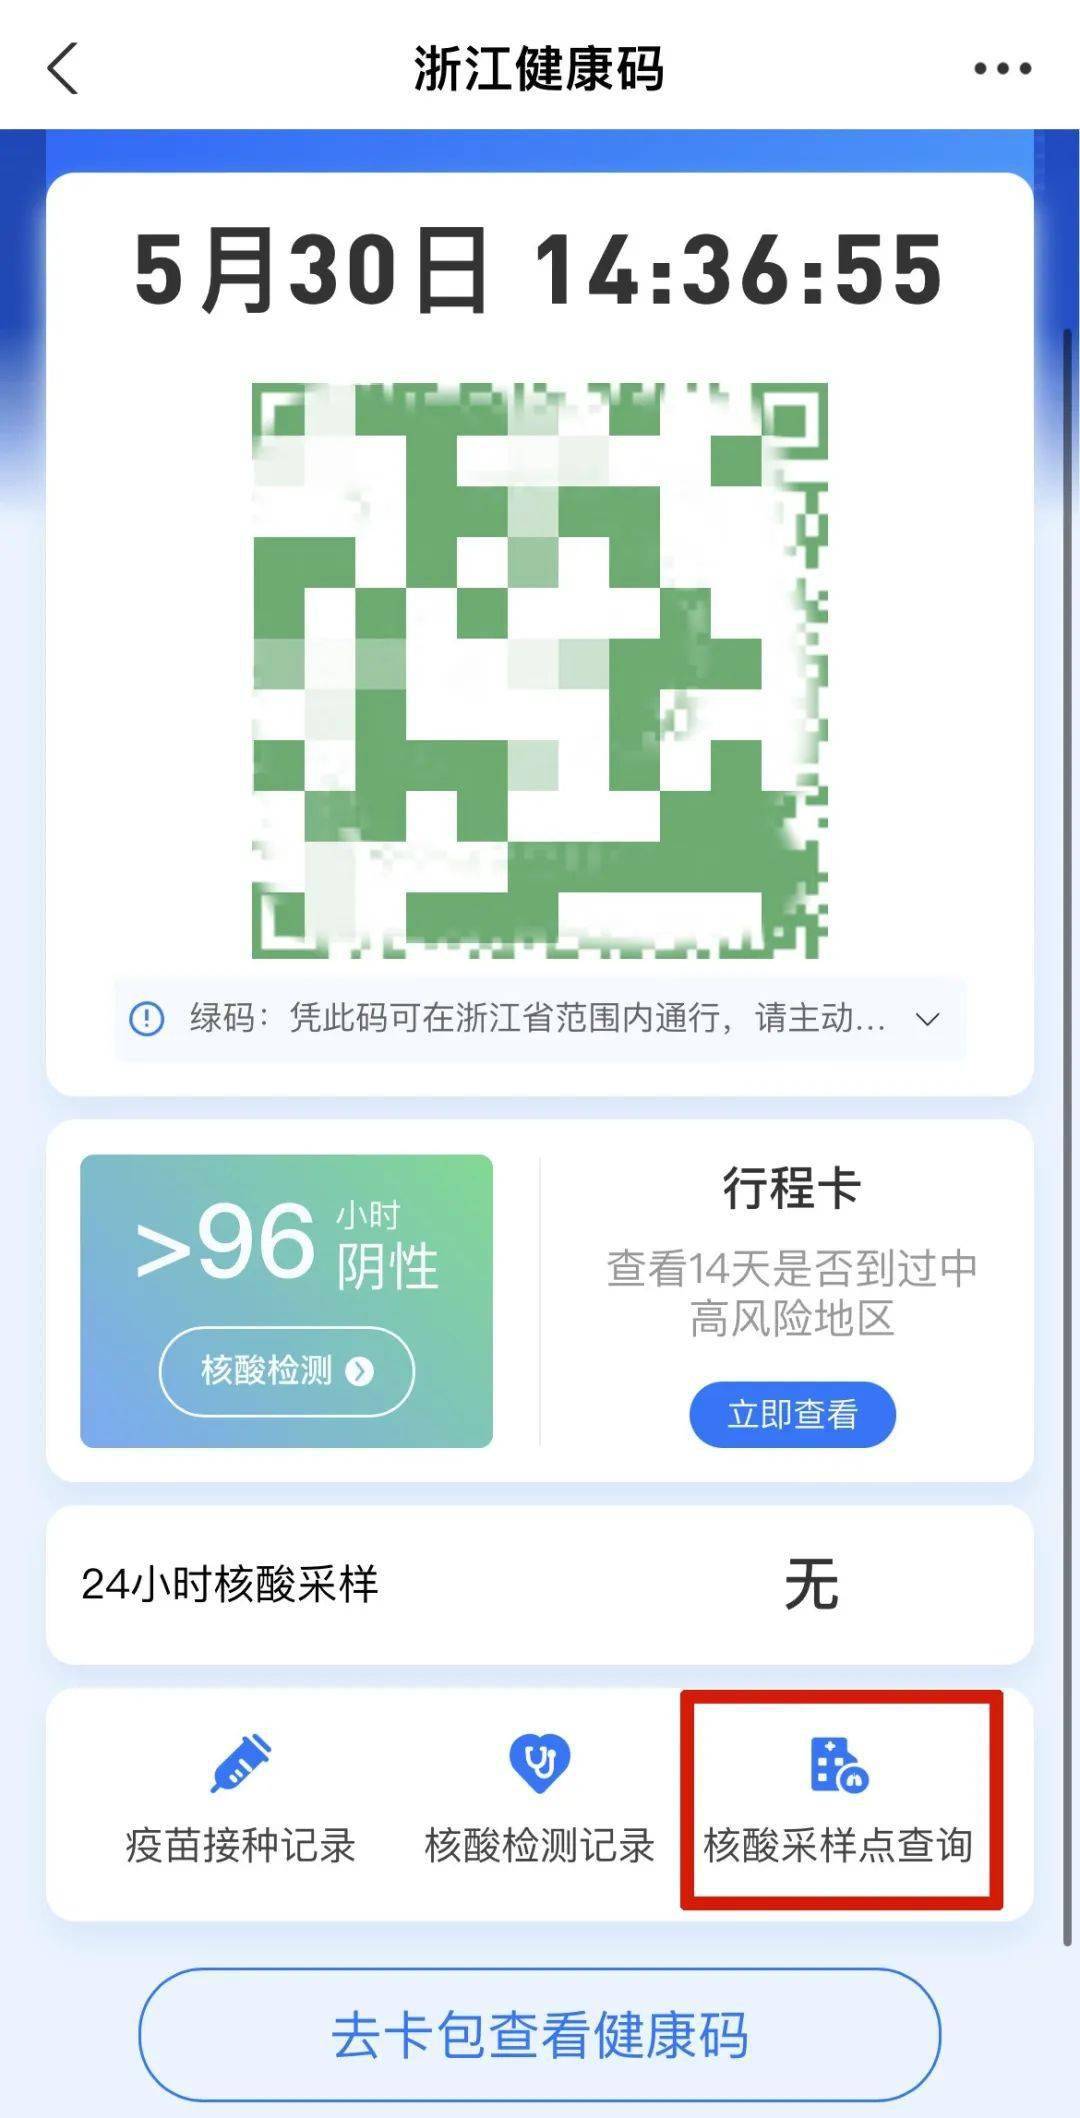 行程码二维码图片贵州图片